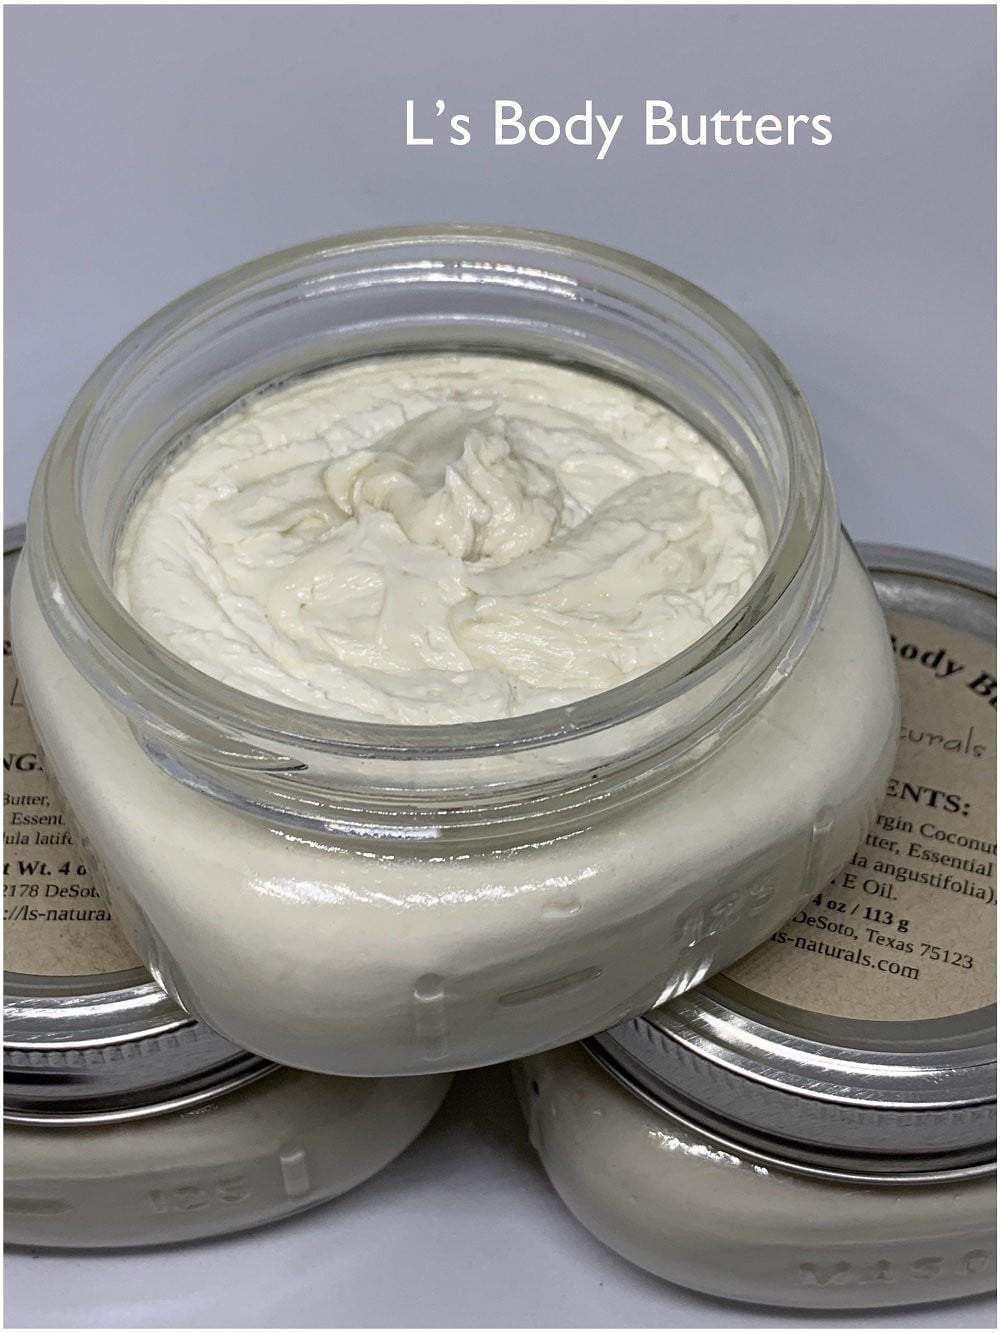 Lavender Body Butter (5.8 oz.) - L's Naturals | Bath & Body Boutique